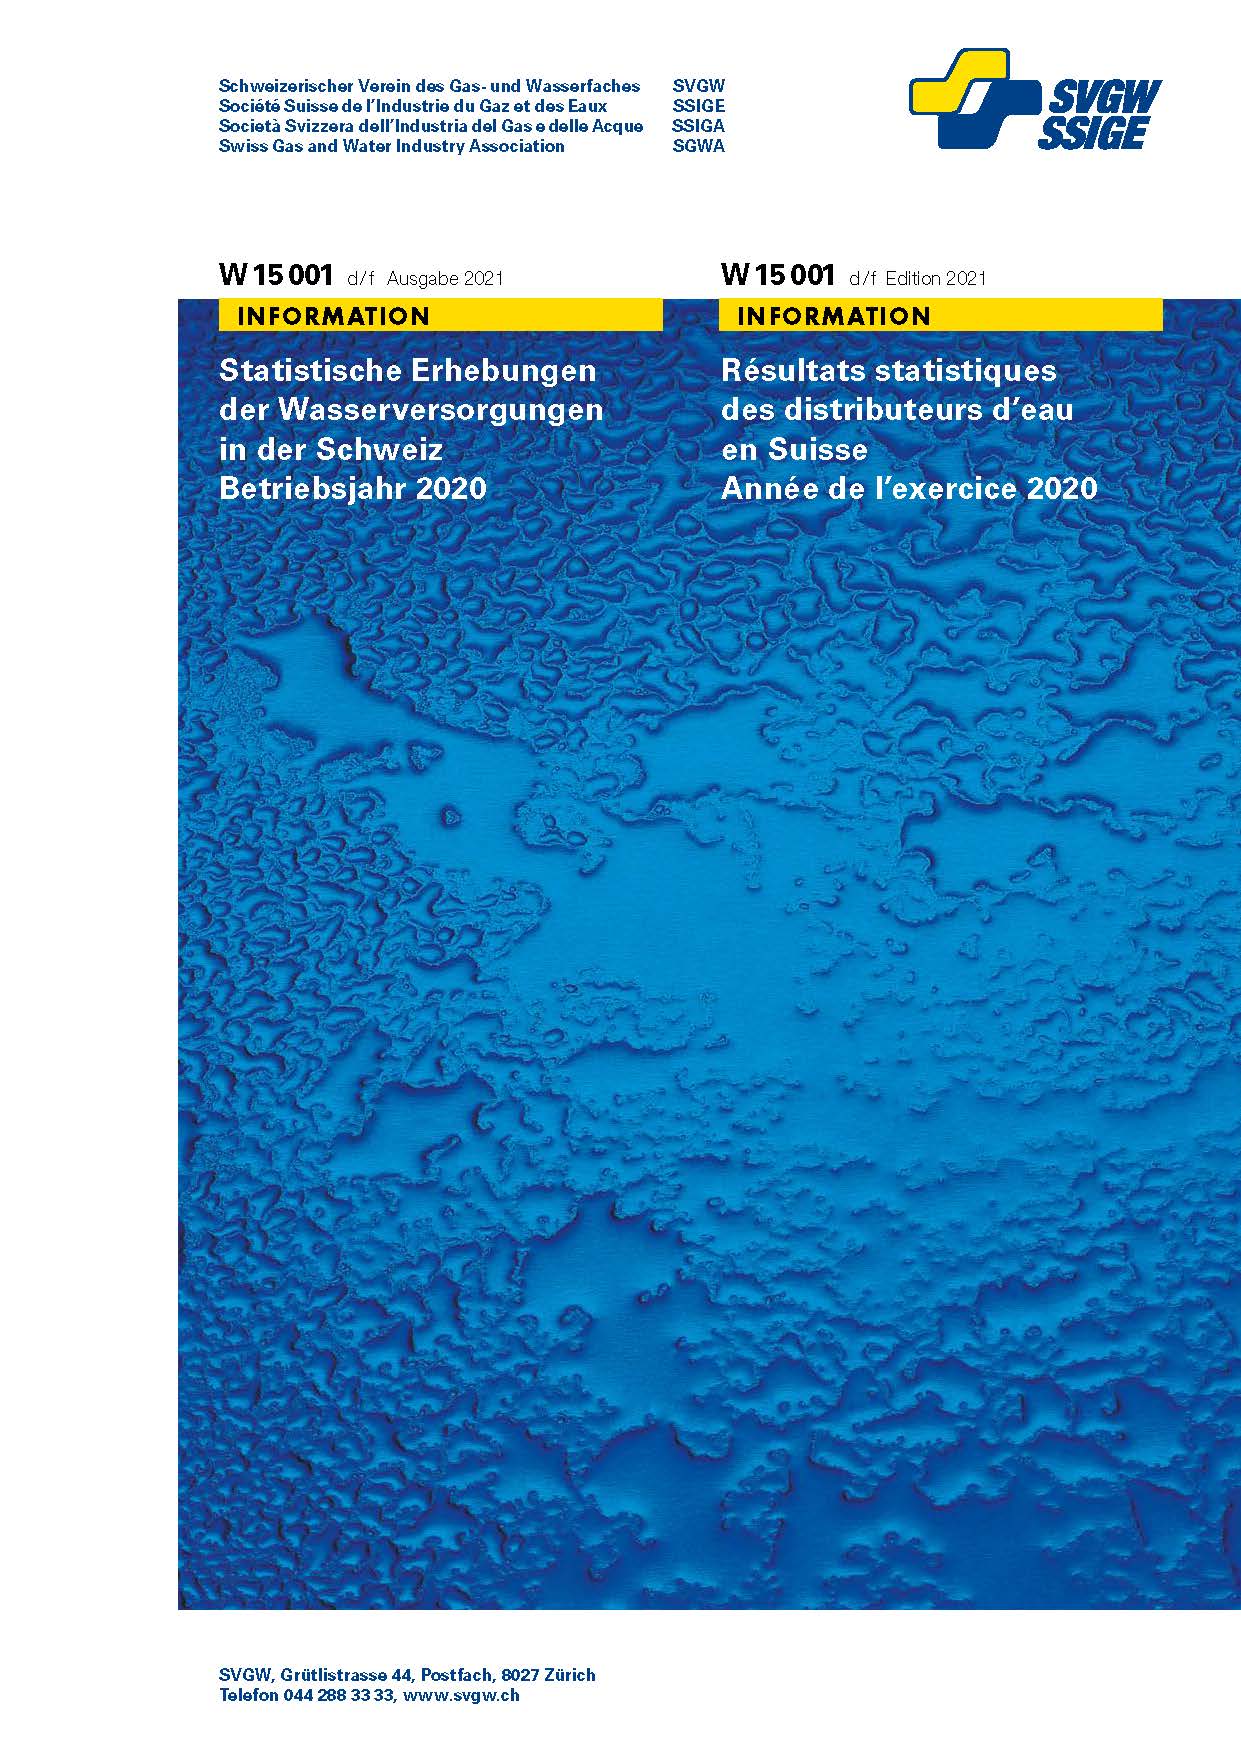 W15001 d/f Statistique d'eau 2021 (exercise 2020) (PDF) (version complète)